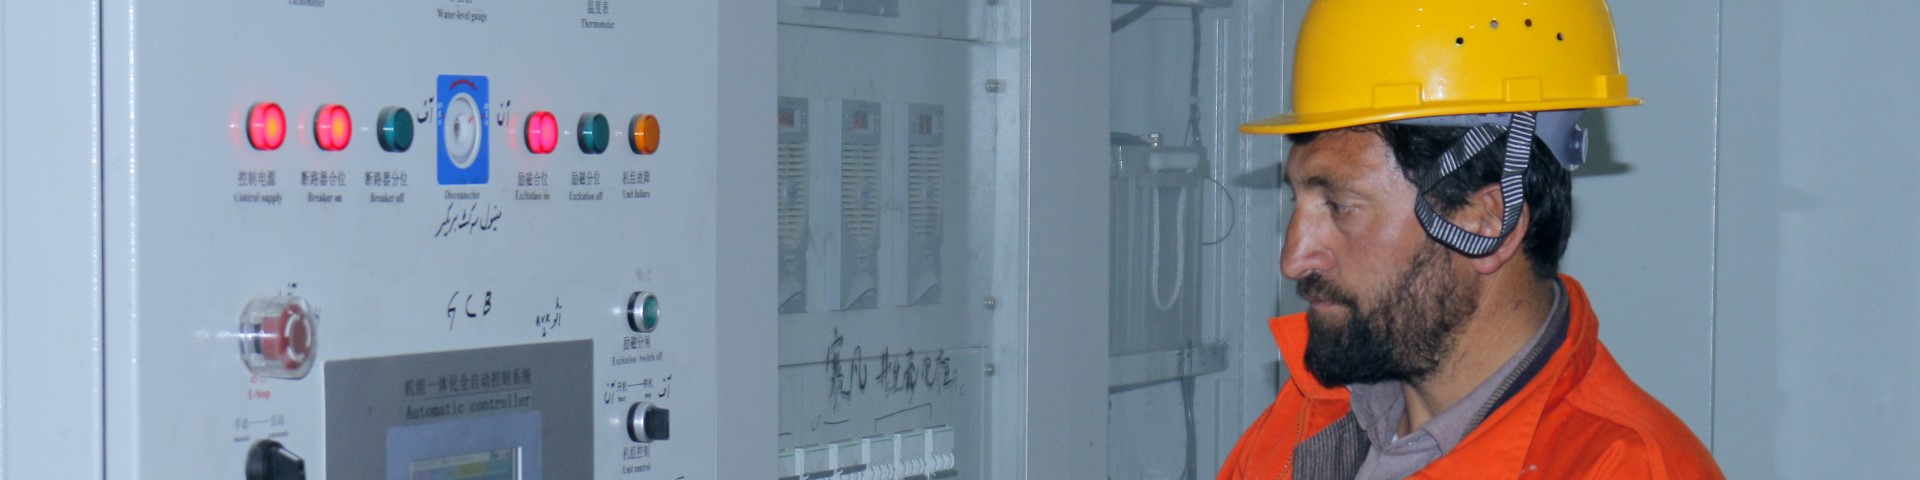 Ein Techniker in Schutzkleidung inspiziert eine Stromanlage.